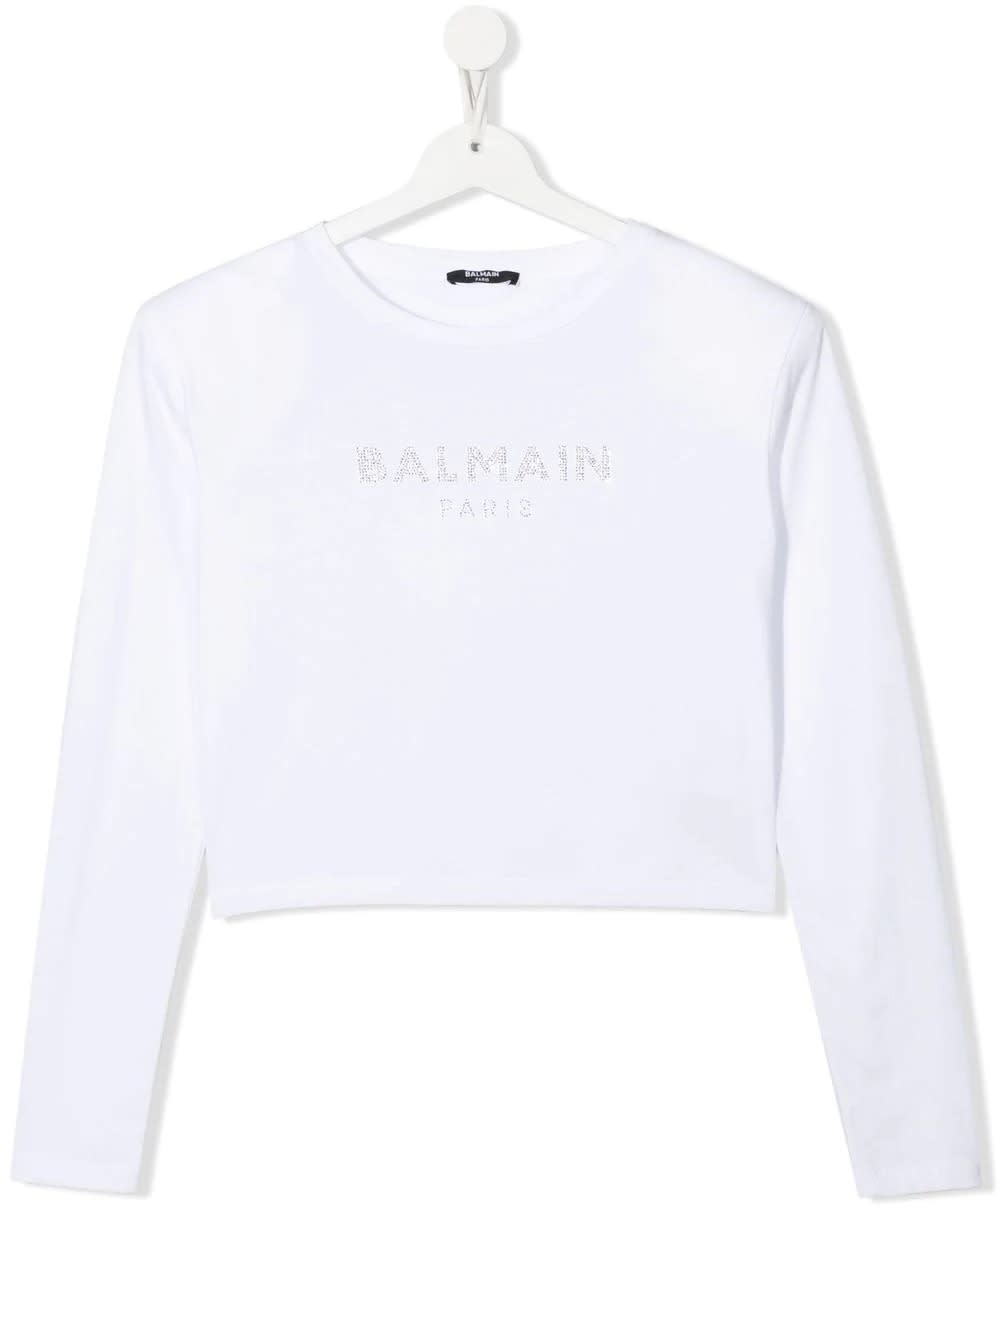 Balmain Kids White T-shirt With Rhinestones Logo